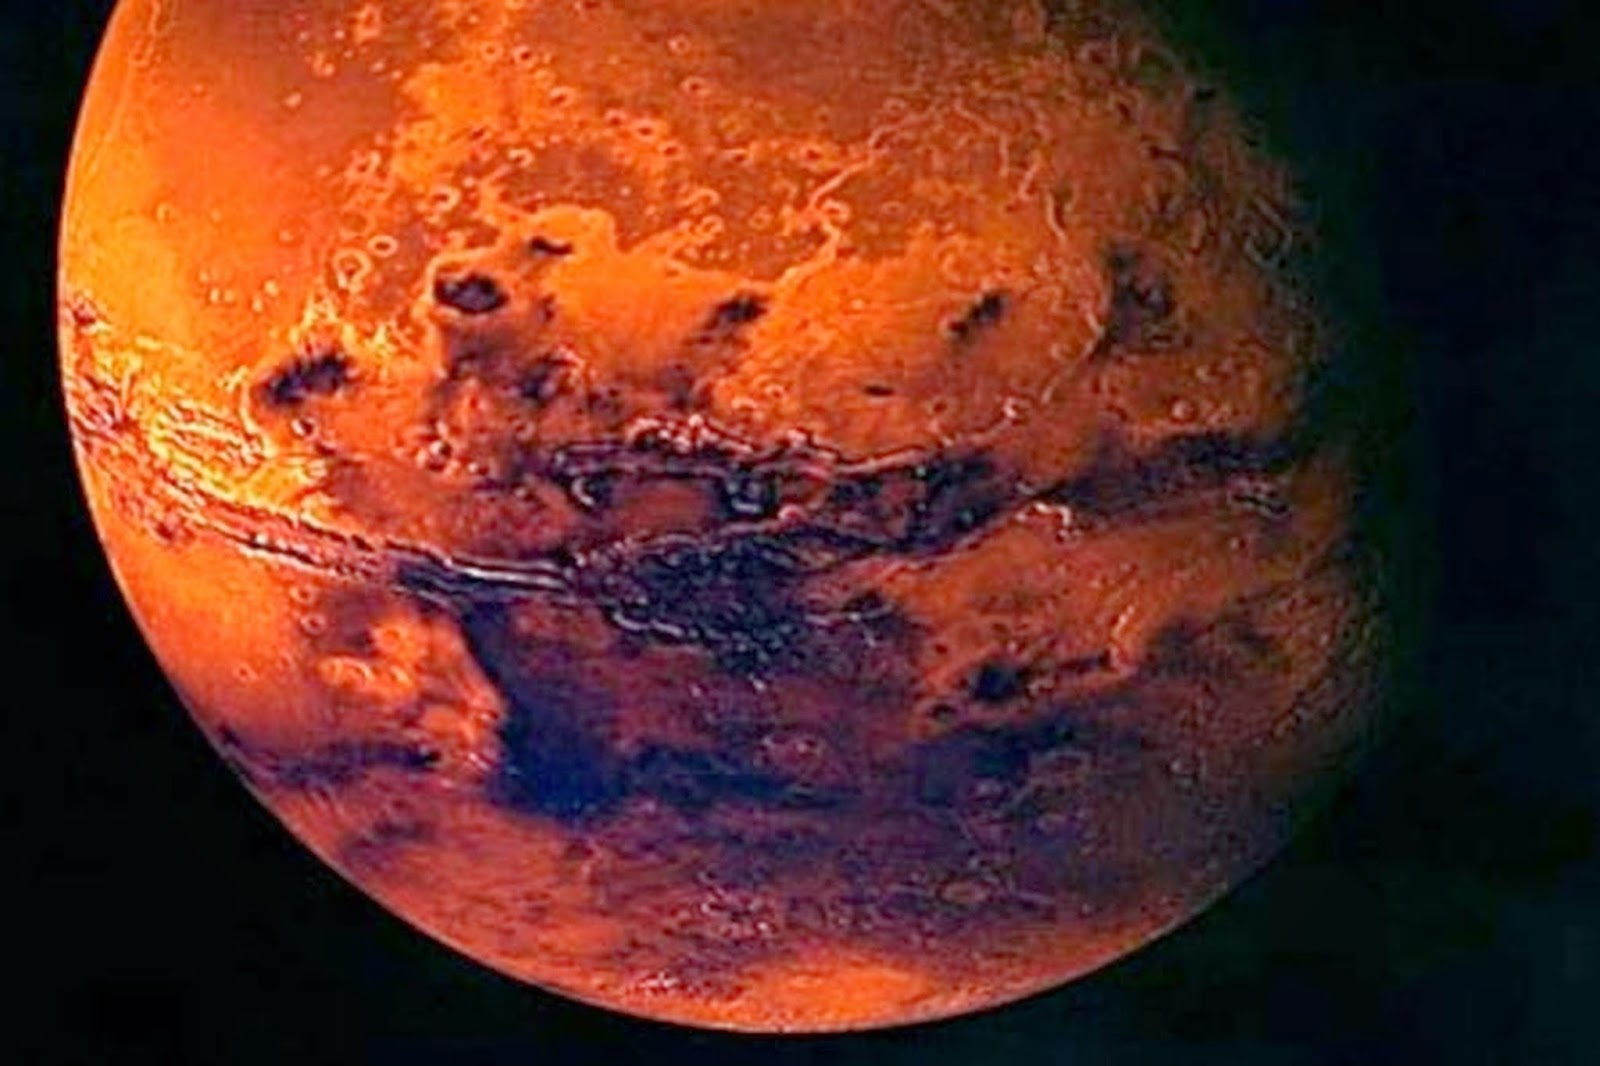 10 حقائق عن الكوكب الأحمر - صفحة 2 Mars-pic-nasa-511014976-99988